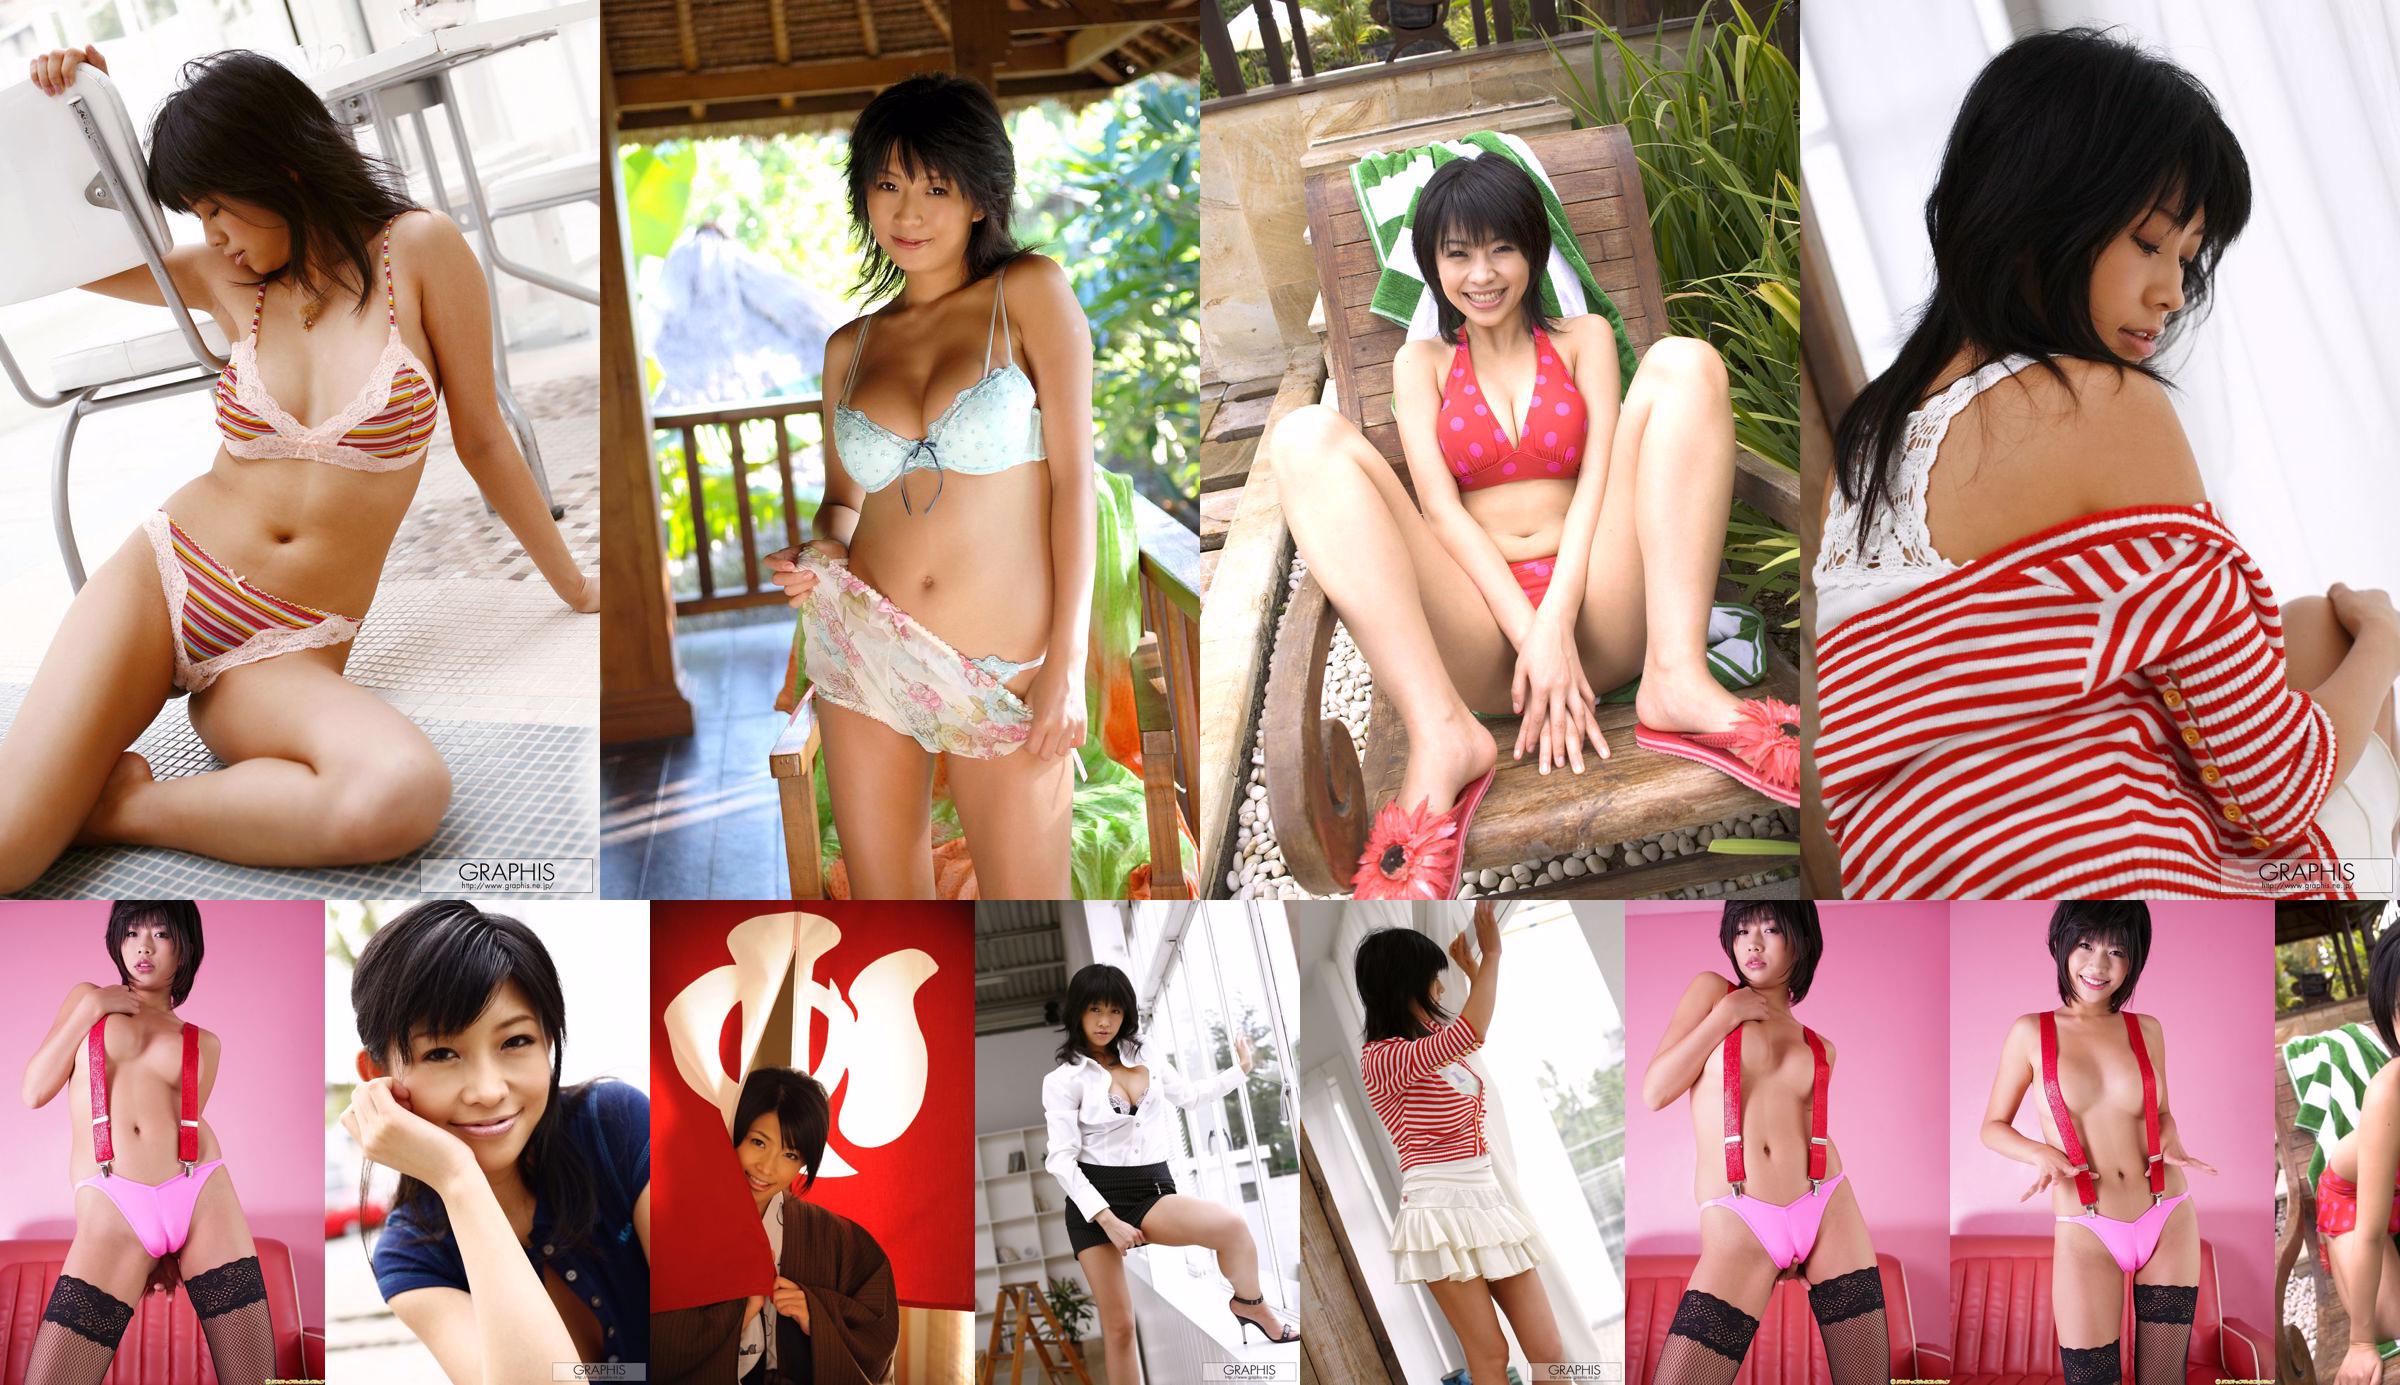 [LOVEPOP] Natsuki Minami Natsuki Minami / Natsuki Minami Photoset 04 No.9d427d Page 1